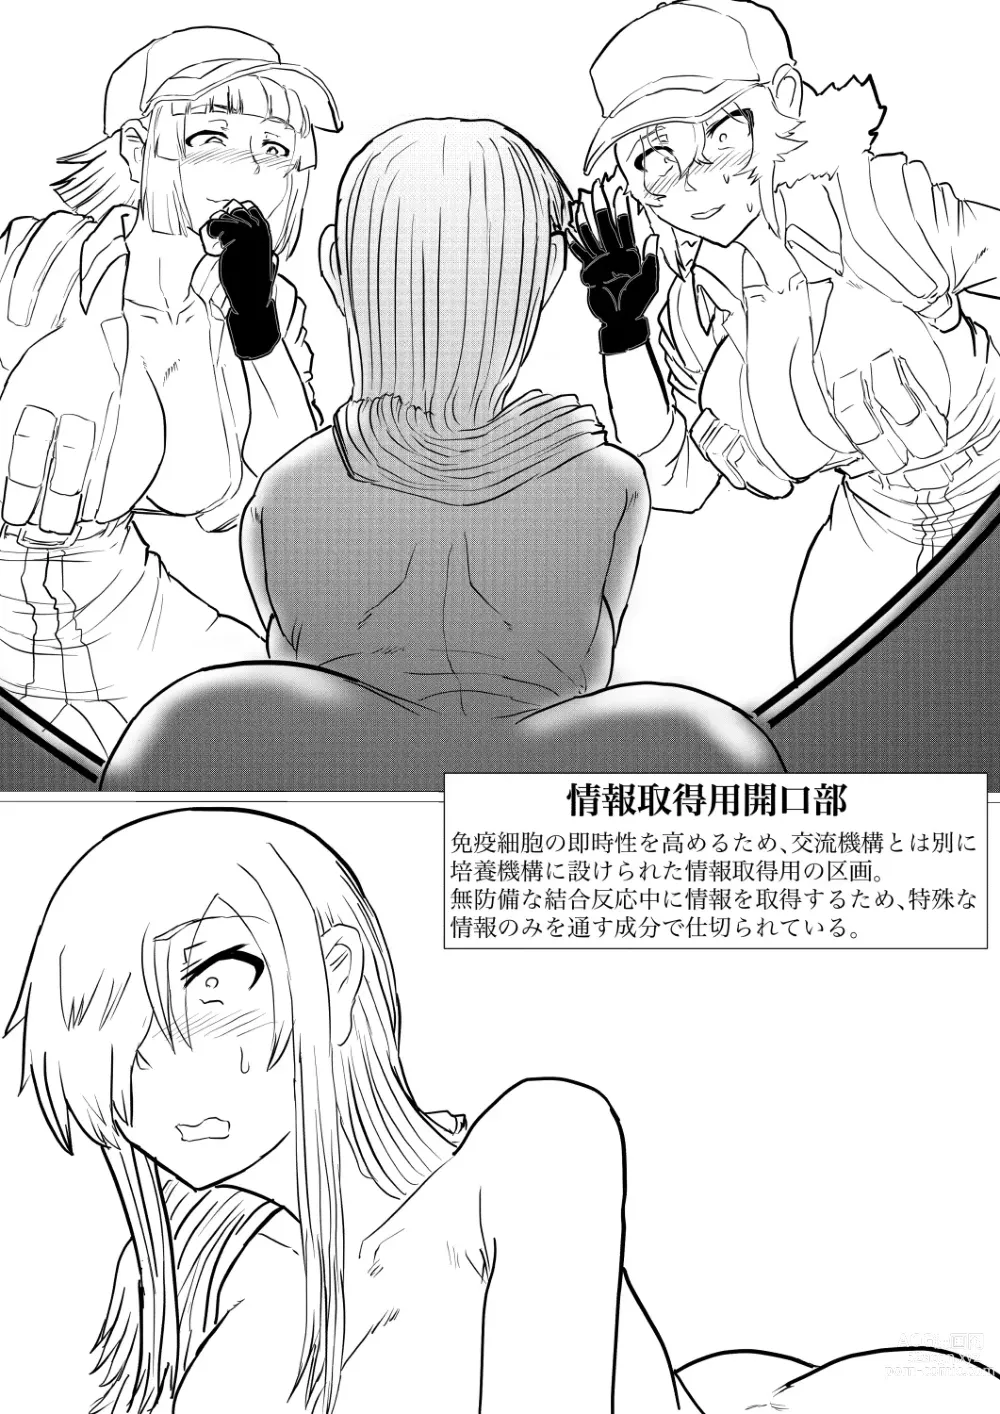 Page 29 of doujinshi Dai 1-ki chiryo-yo no kiki kosei